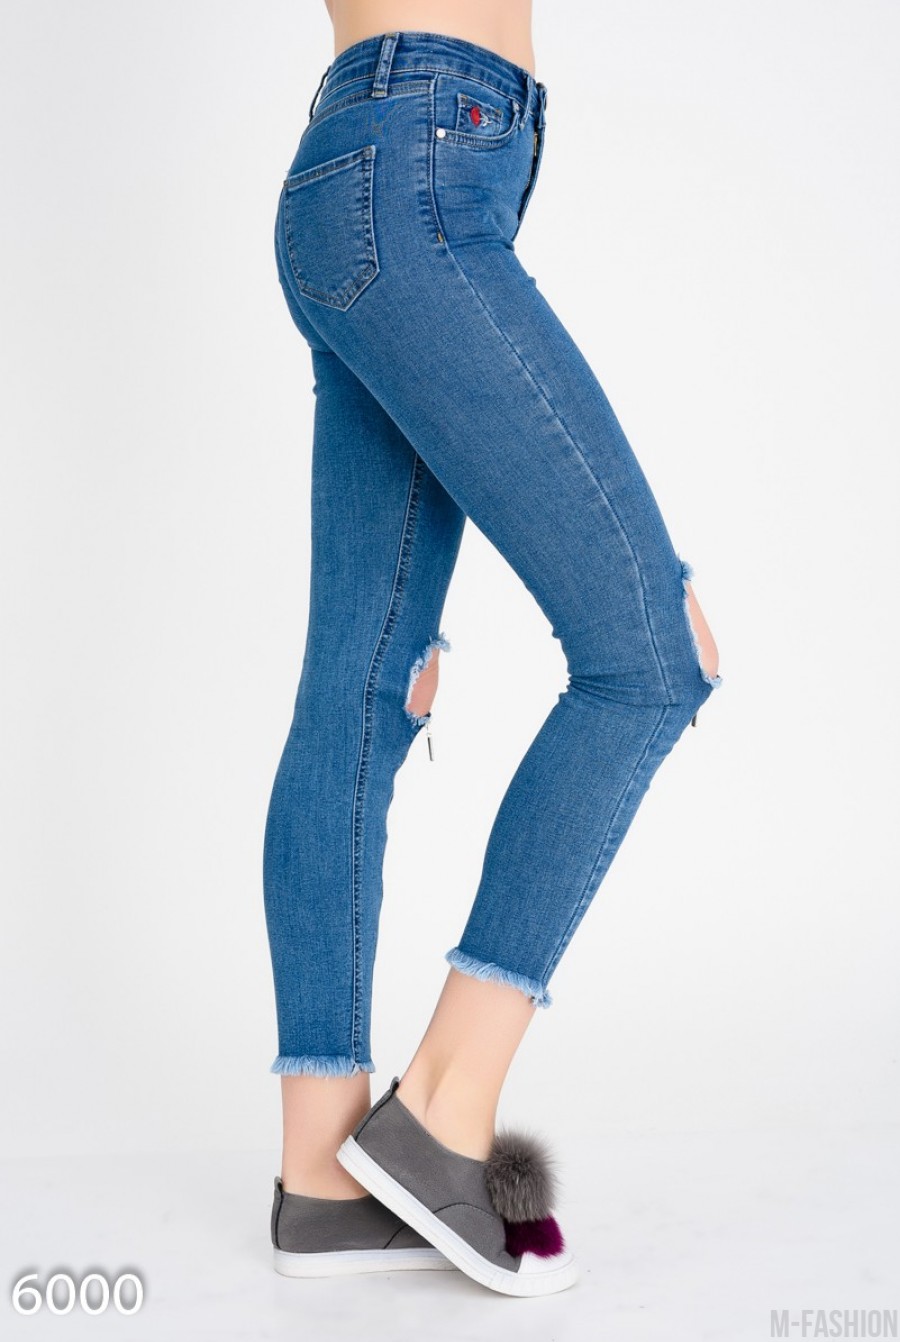 Короткие узкие джинсы с крупными дырками на коленях- Фото 3